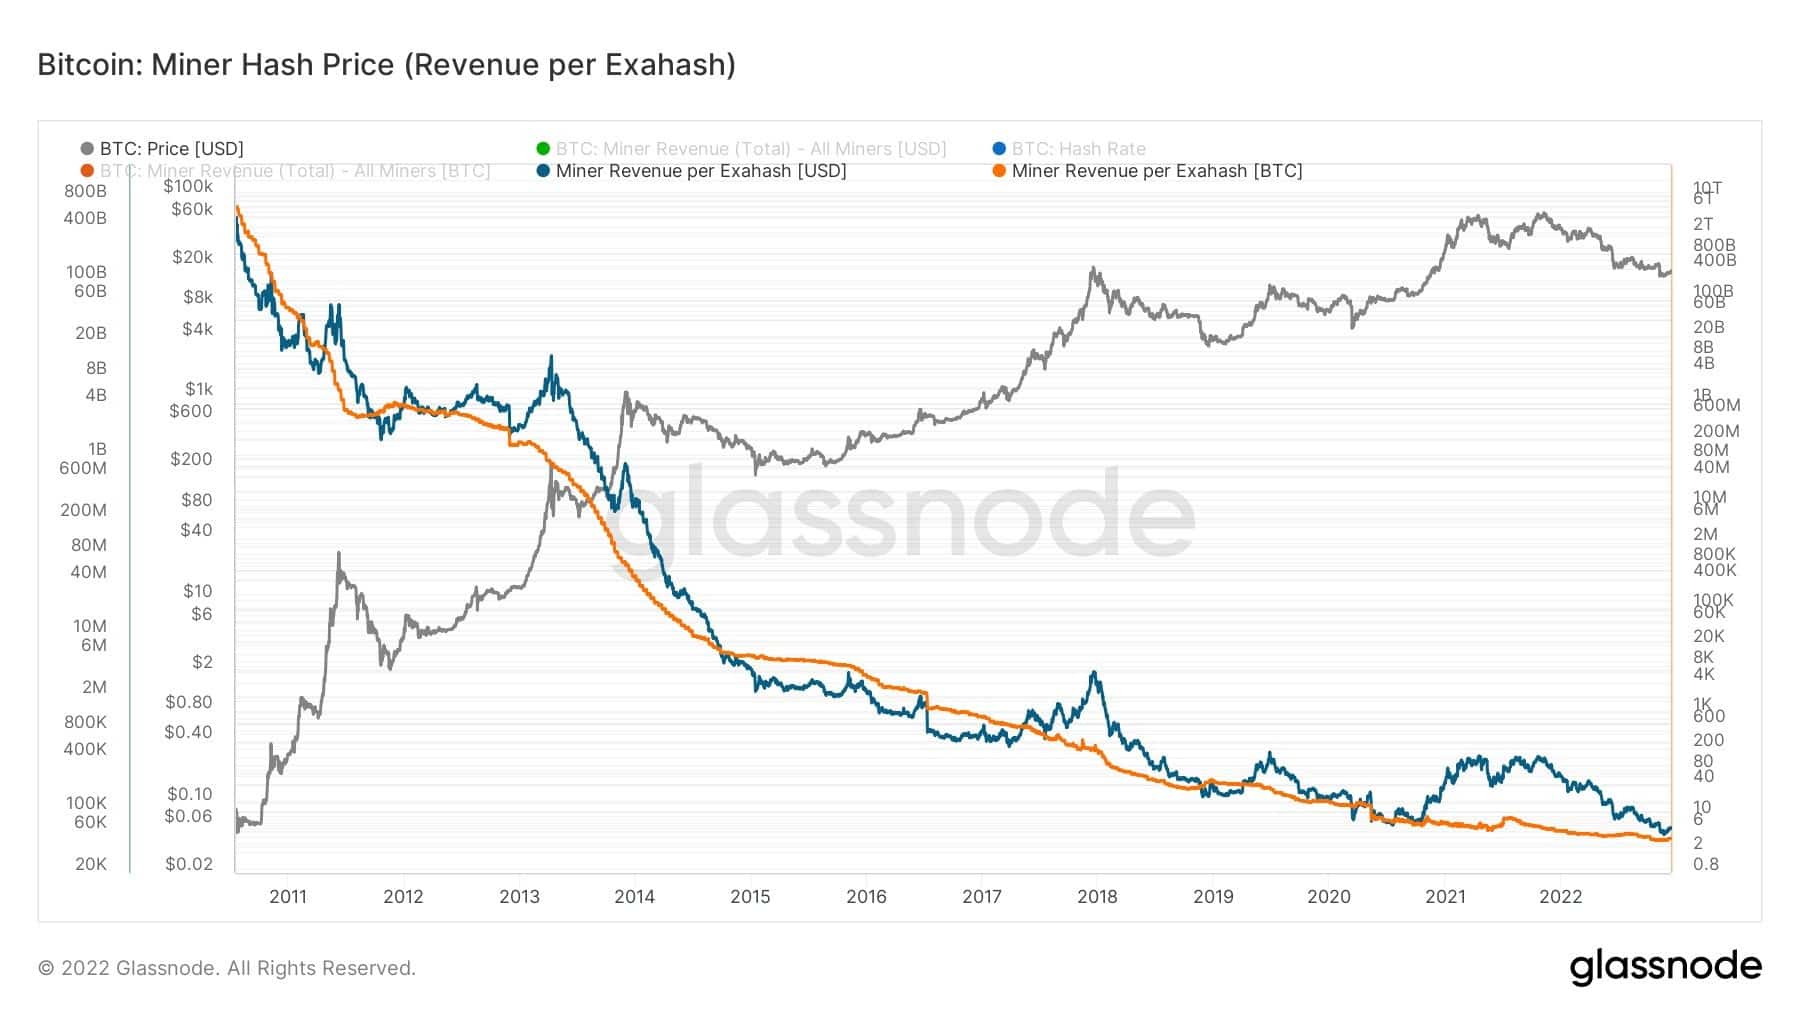 Grafik der Miner-Einnahmen pro Exahash (Quelle: Glassnode)